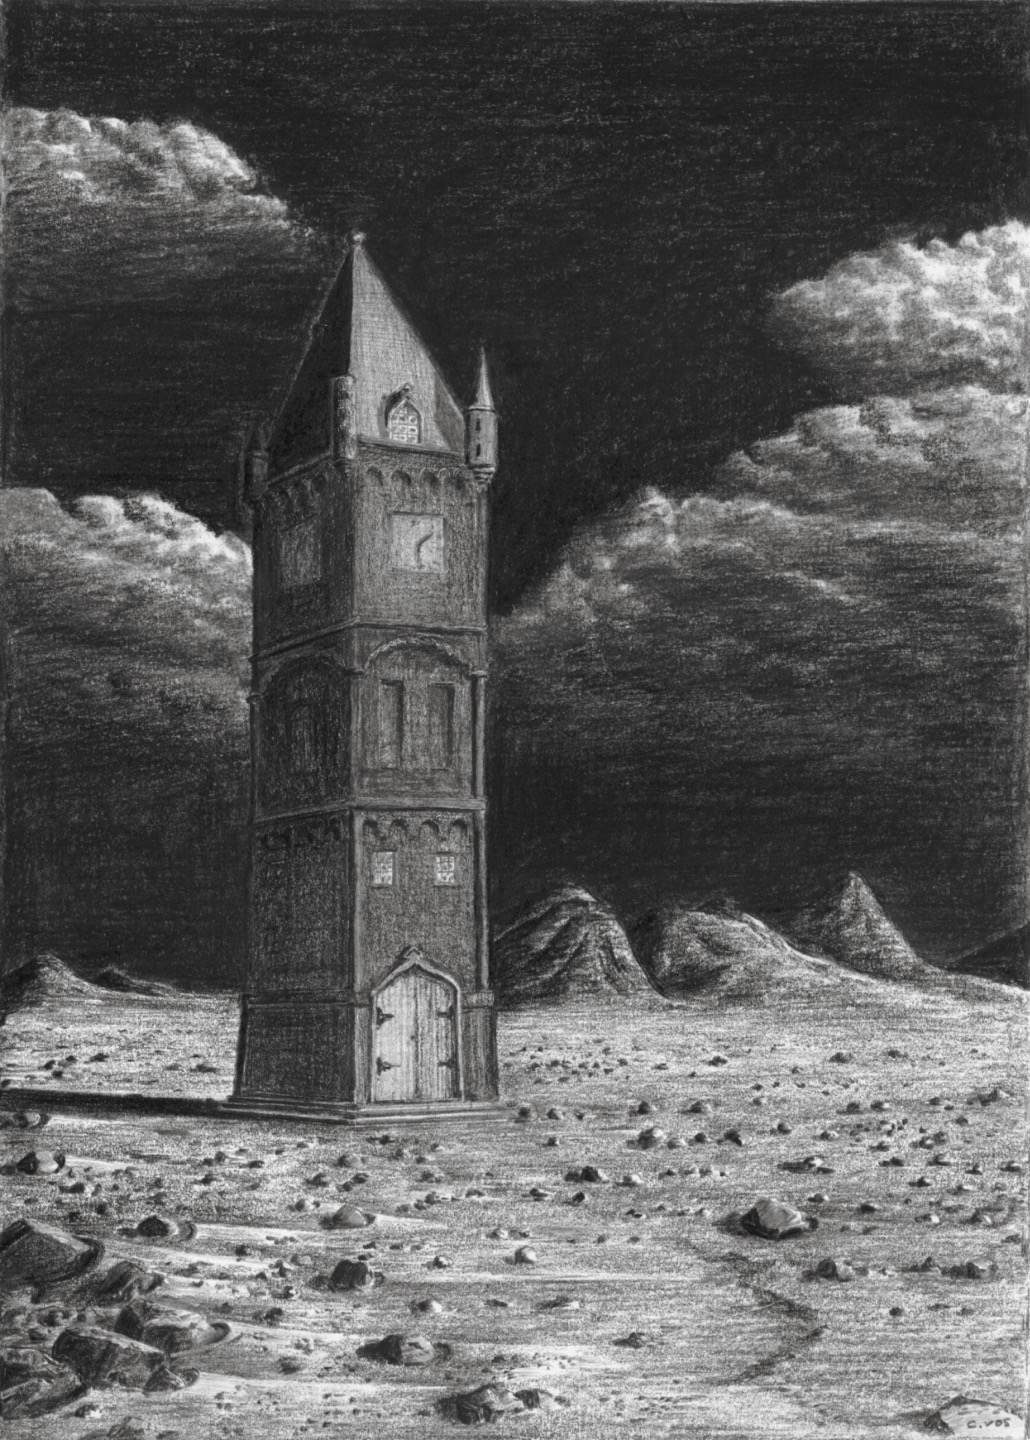 Alleenstaande toren (1996).jpg